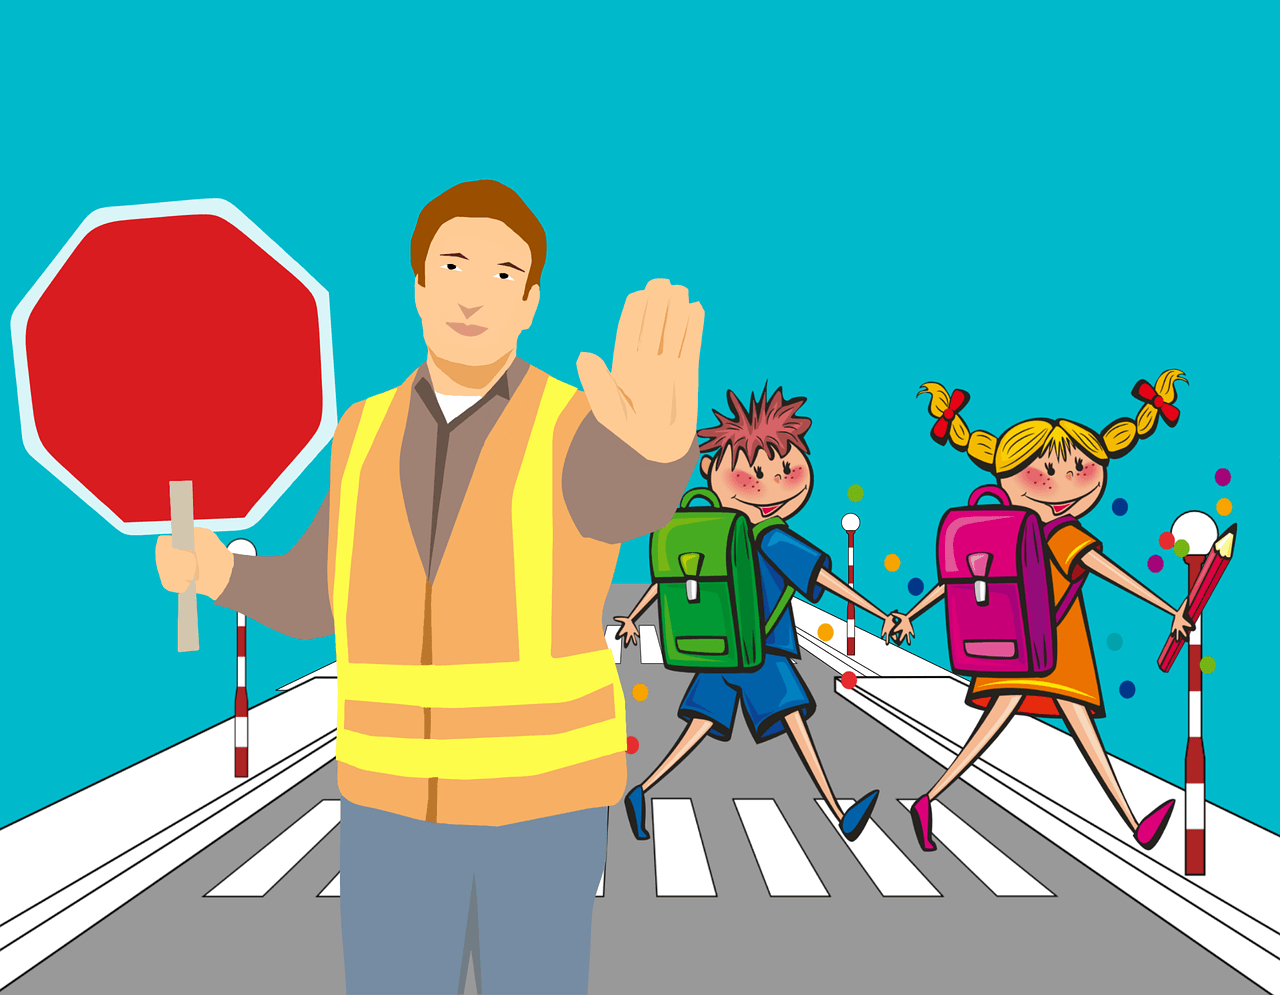 Cartoni animati sull’educazione stradale per insegnare le regole ai bambini